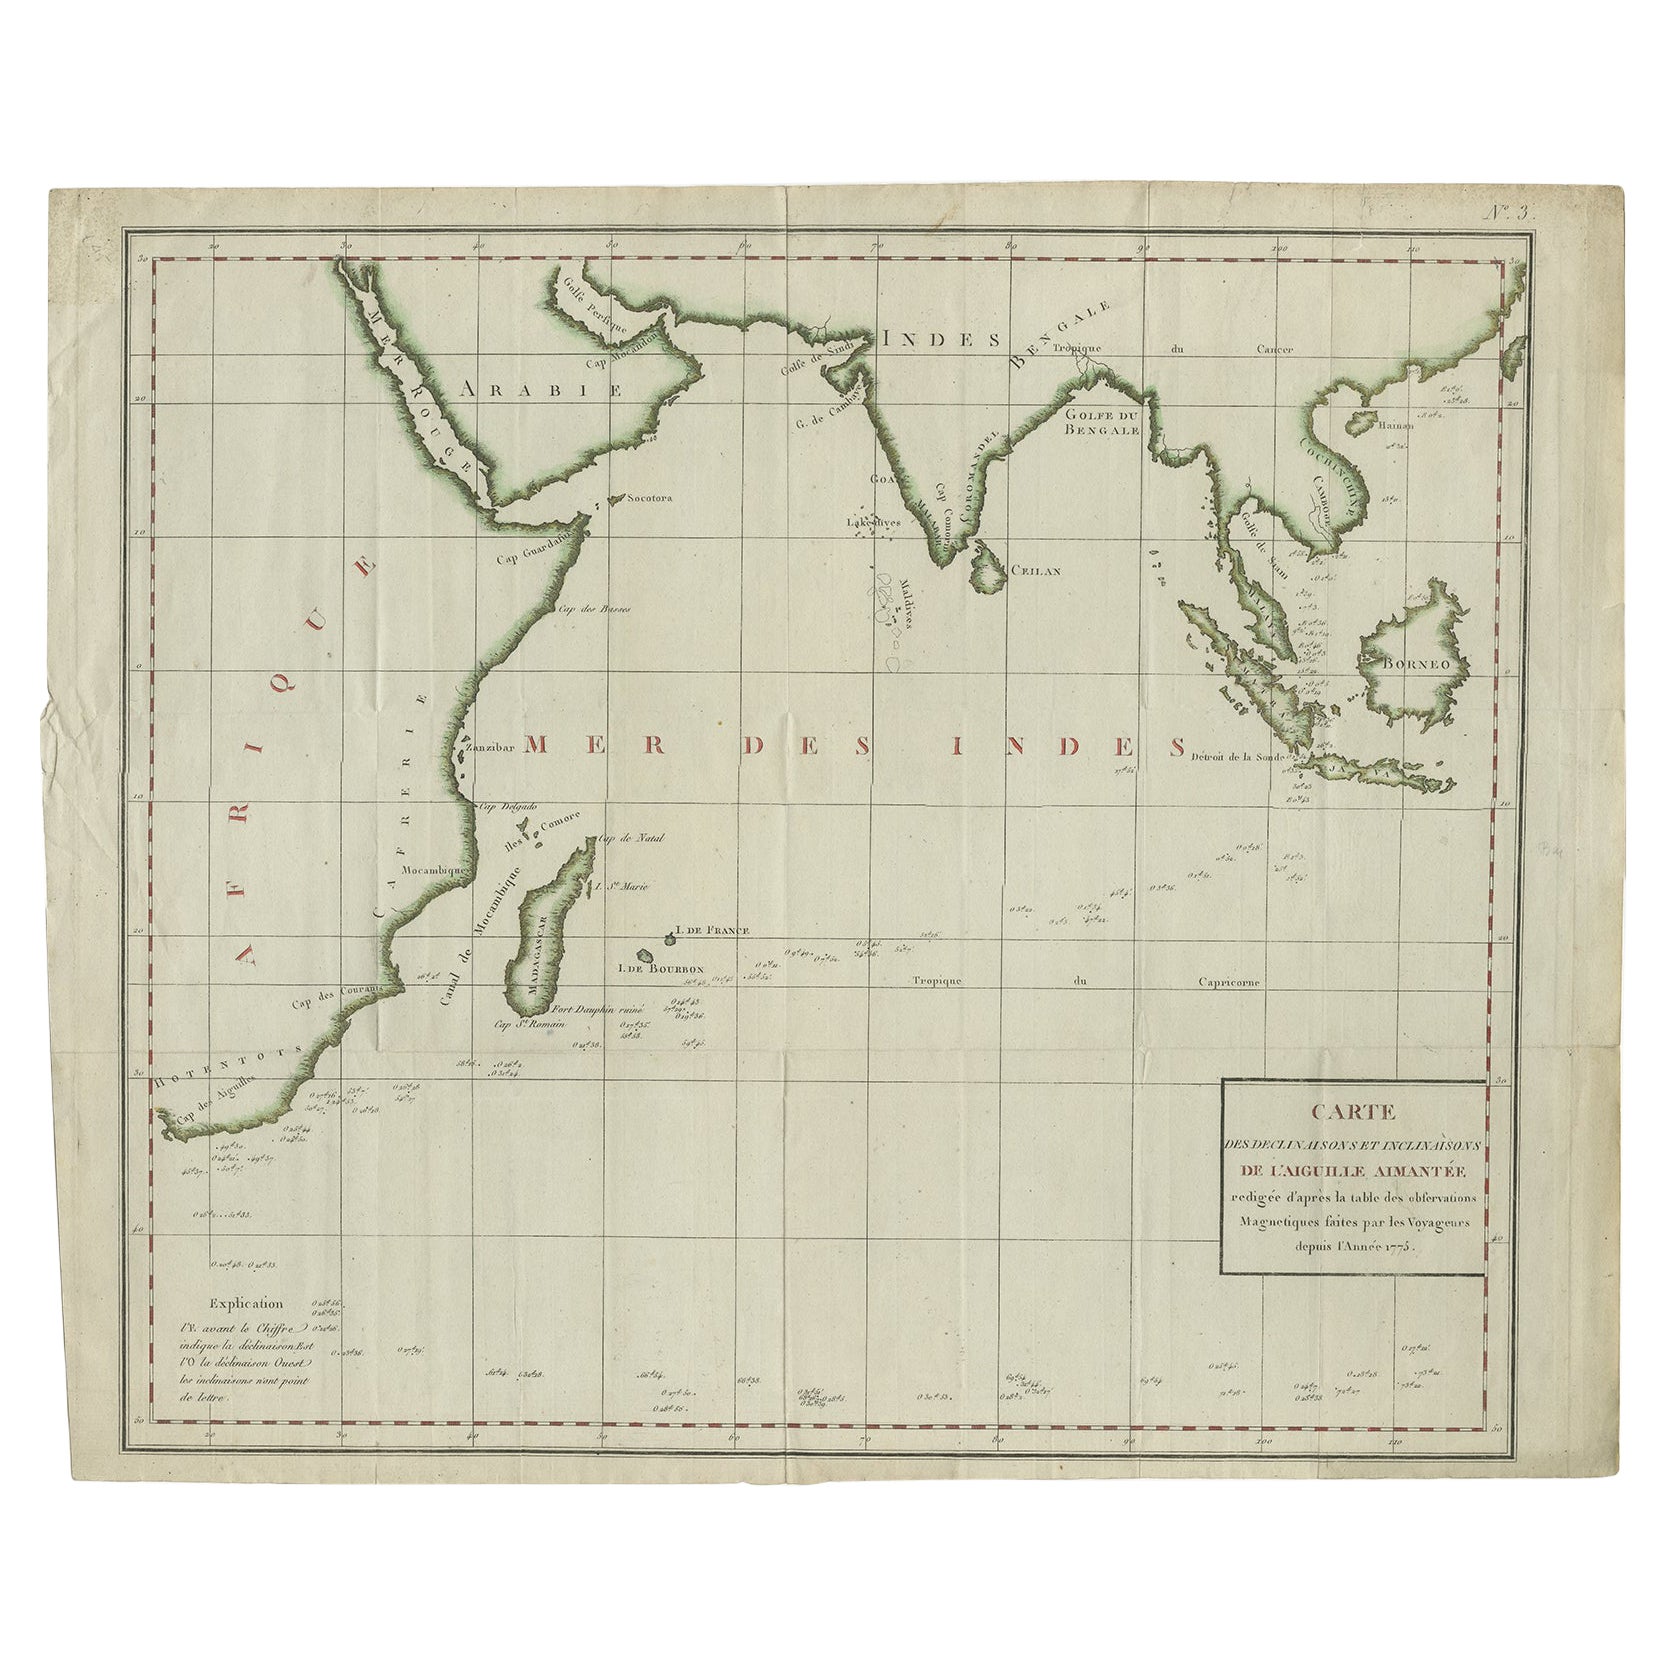 Old Map of Indian Ocean & Sumatra, Java, Borneo, India, Arabia, Africa, c.1783